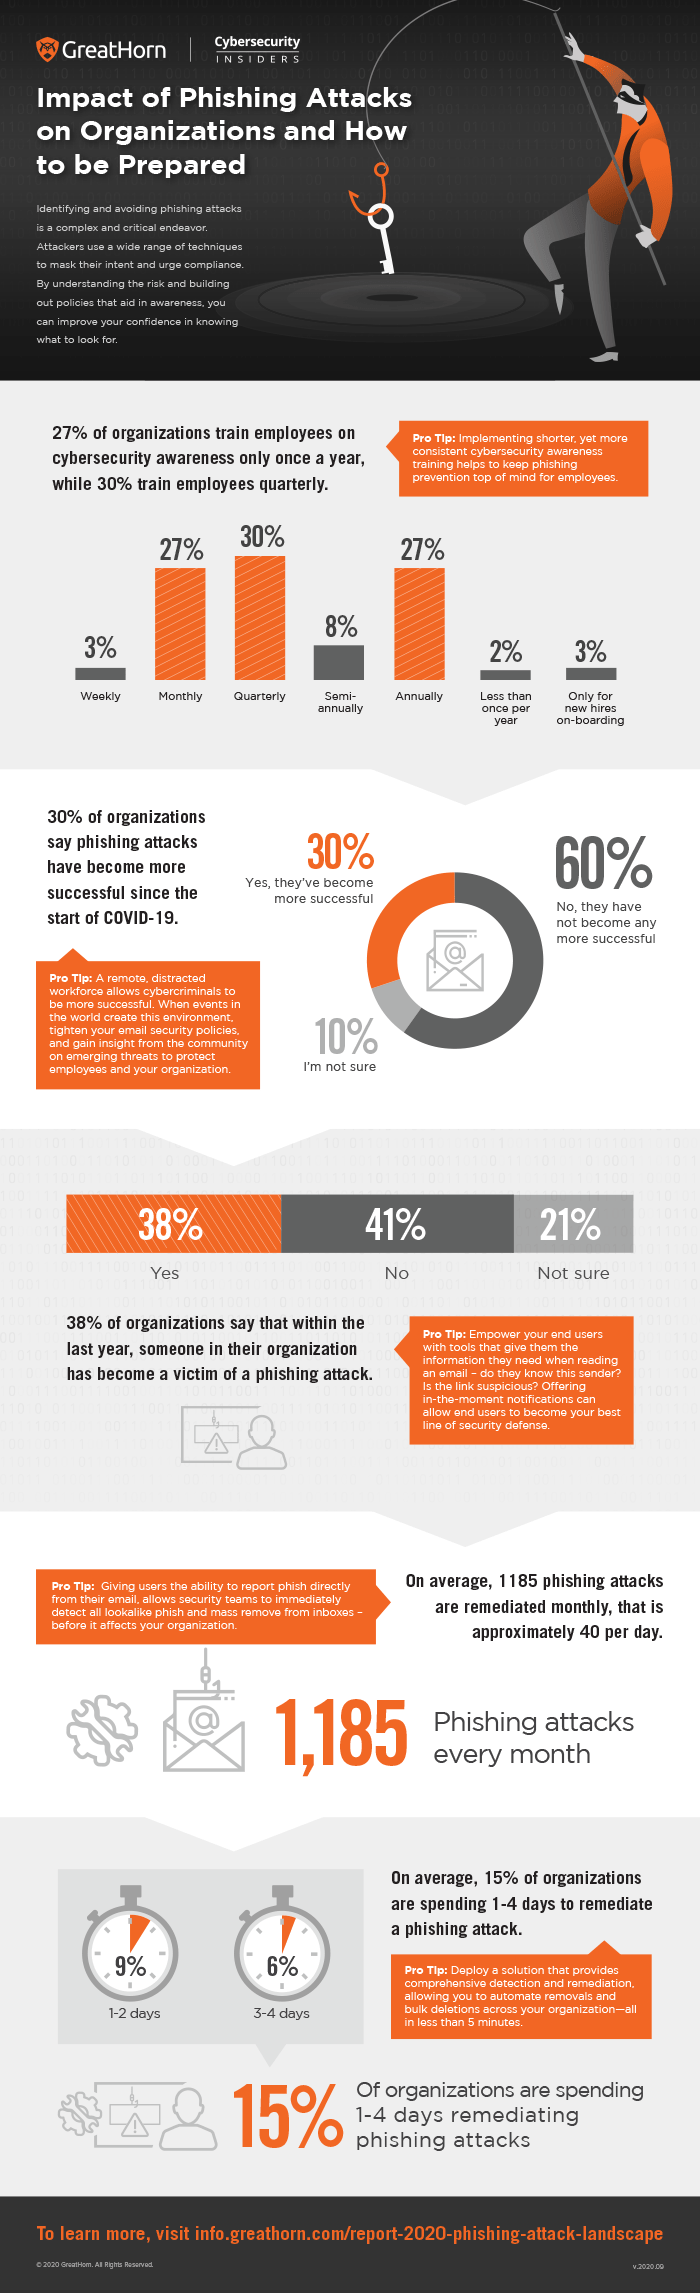 Impact of Phishing Attacks infographic